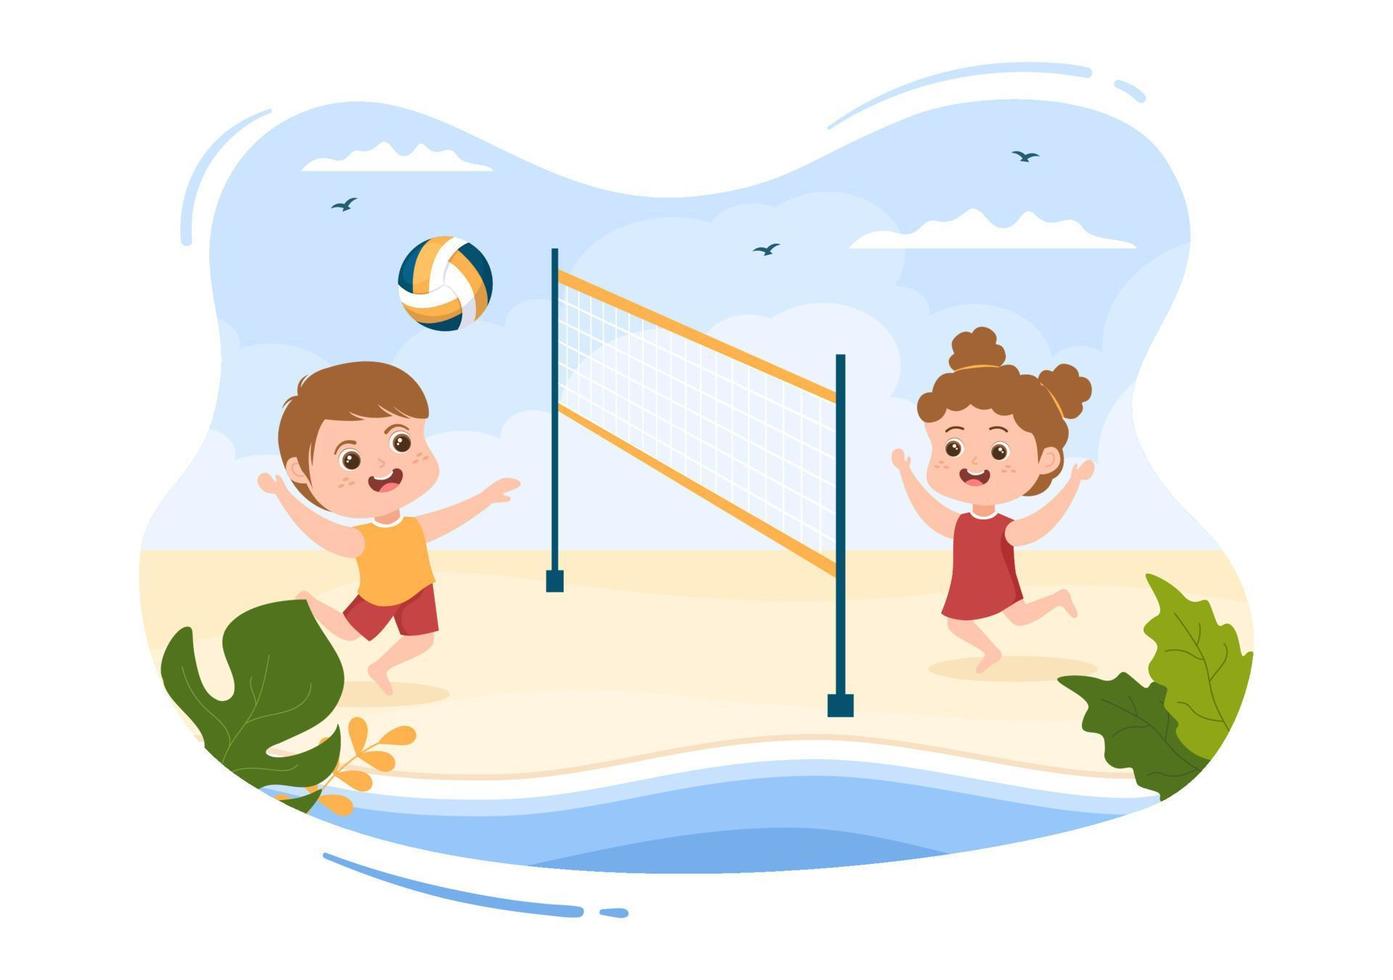 giocatore di beach volley sull'attacco per serie di competizioni sportive all'aperto nell'illustrazione piana del fumetto dei bambini svegli vettore